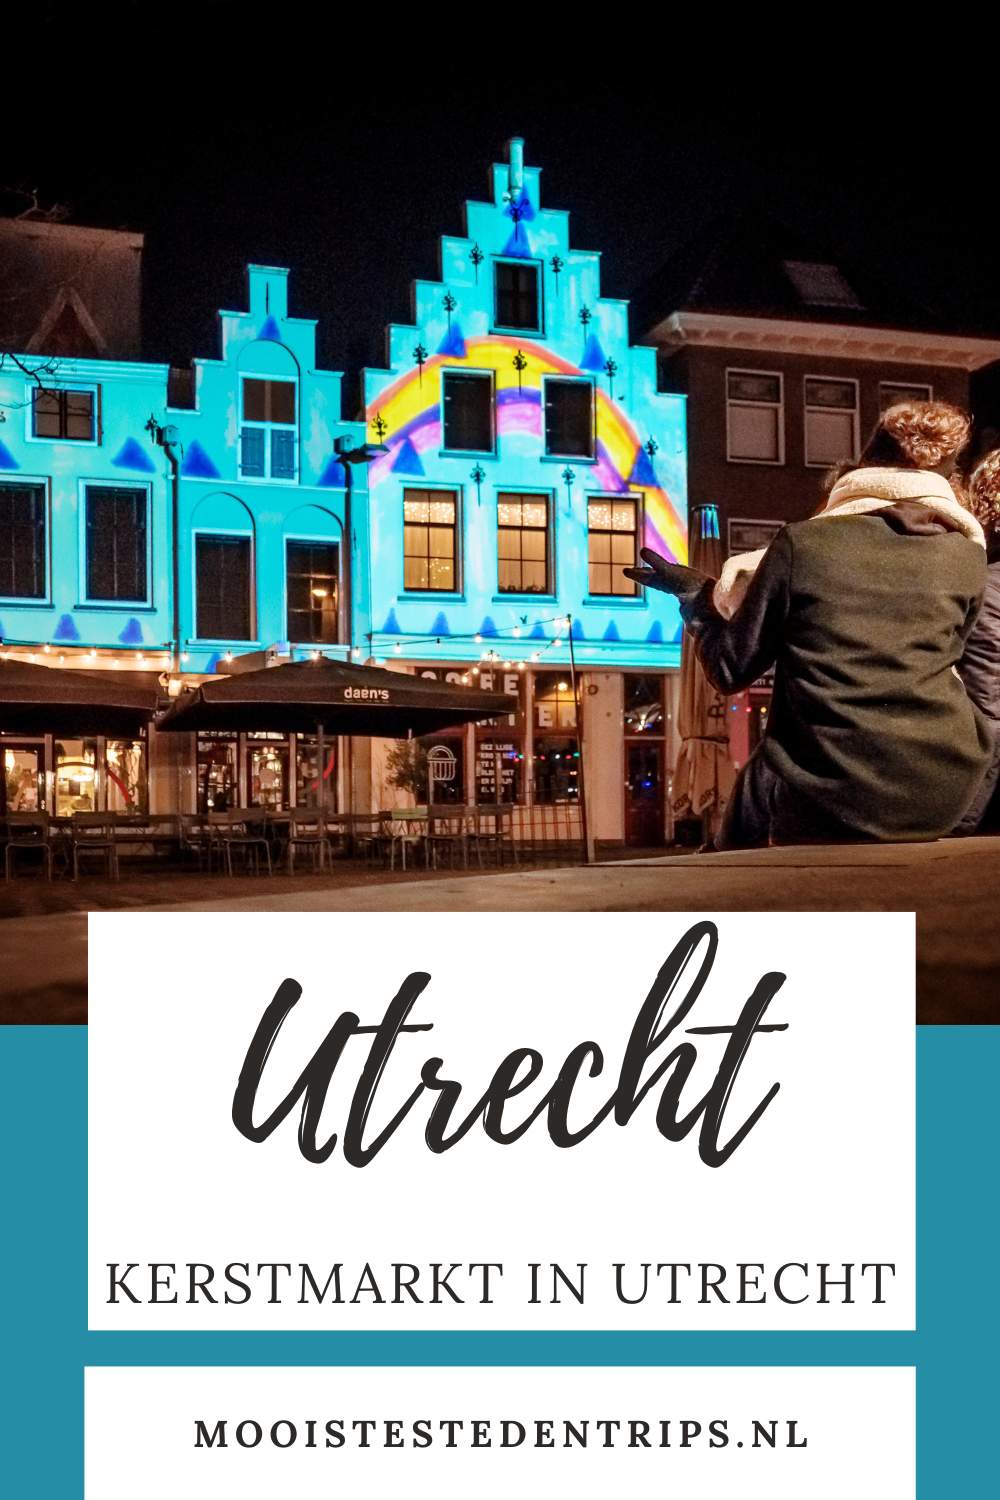 Kerstmarkt Utrecht: ontdek de leukste tips voor de winter in Utrecht | Mooistestedentrips.nl